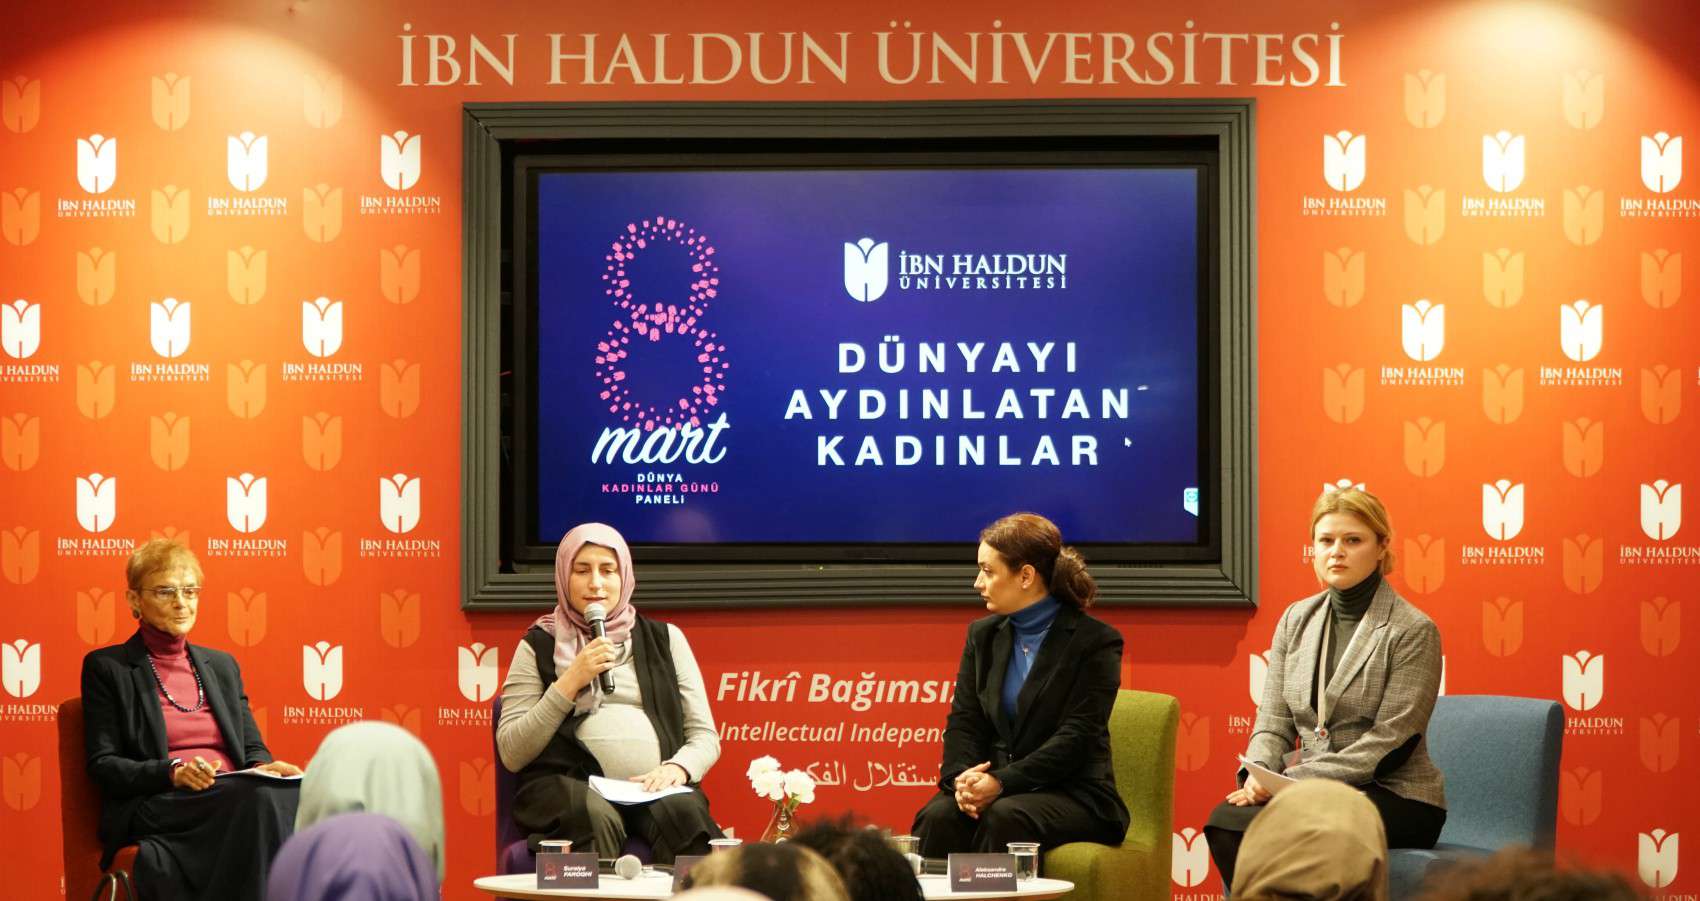 'Dünyayı Aydınlatan Kadınlar', İbn Haldun Üniversitesi’de Anıldı